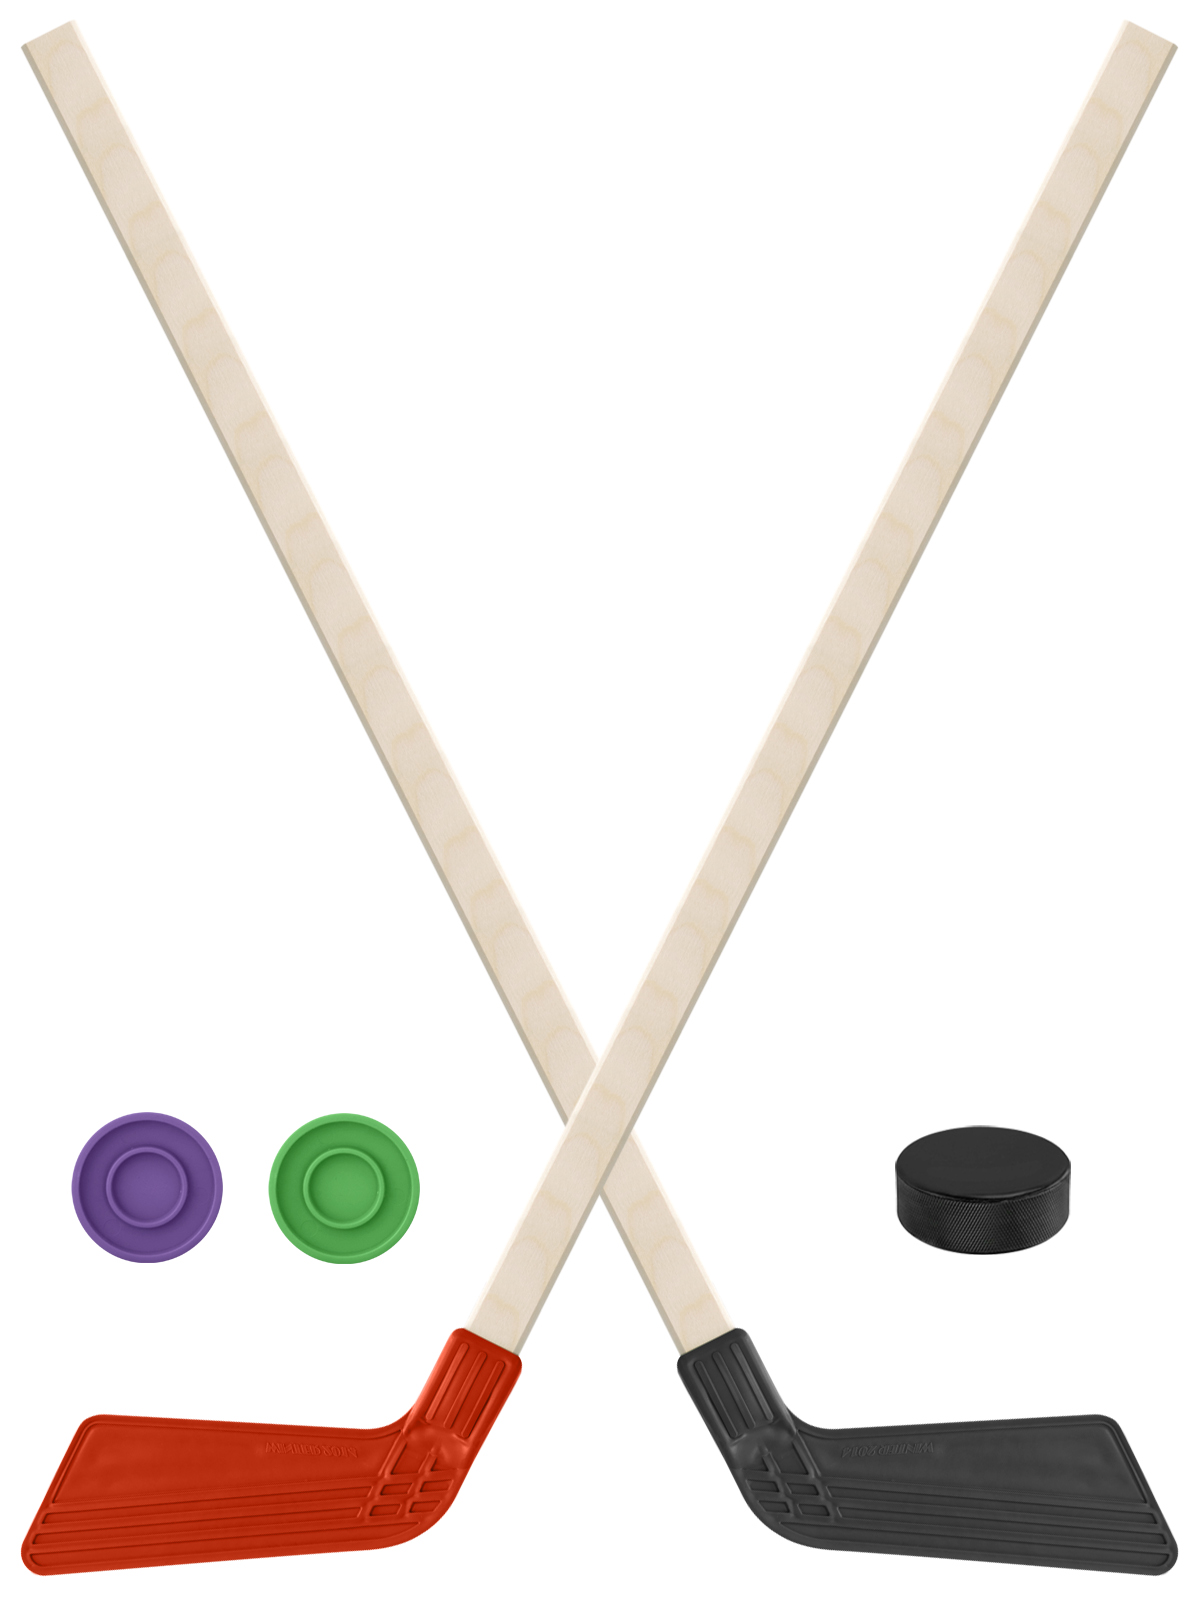 Детский хоккейный набор Задира-плюс Клюшка хоккейная 2шт(красн,чёрн) +2 шайбы+Шайба 60 мм клюшка флорбольная acito moooo 33 yellow 80 round левый